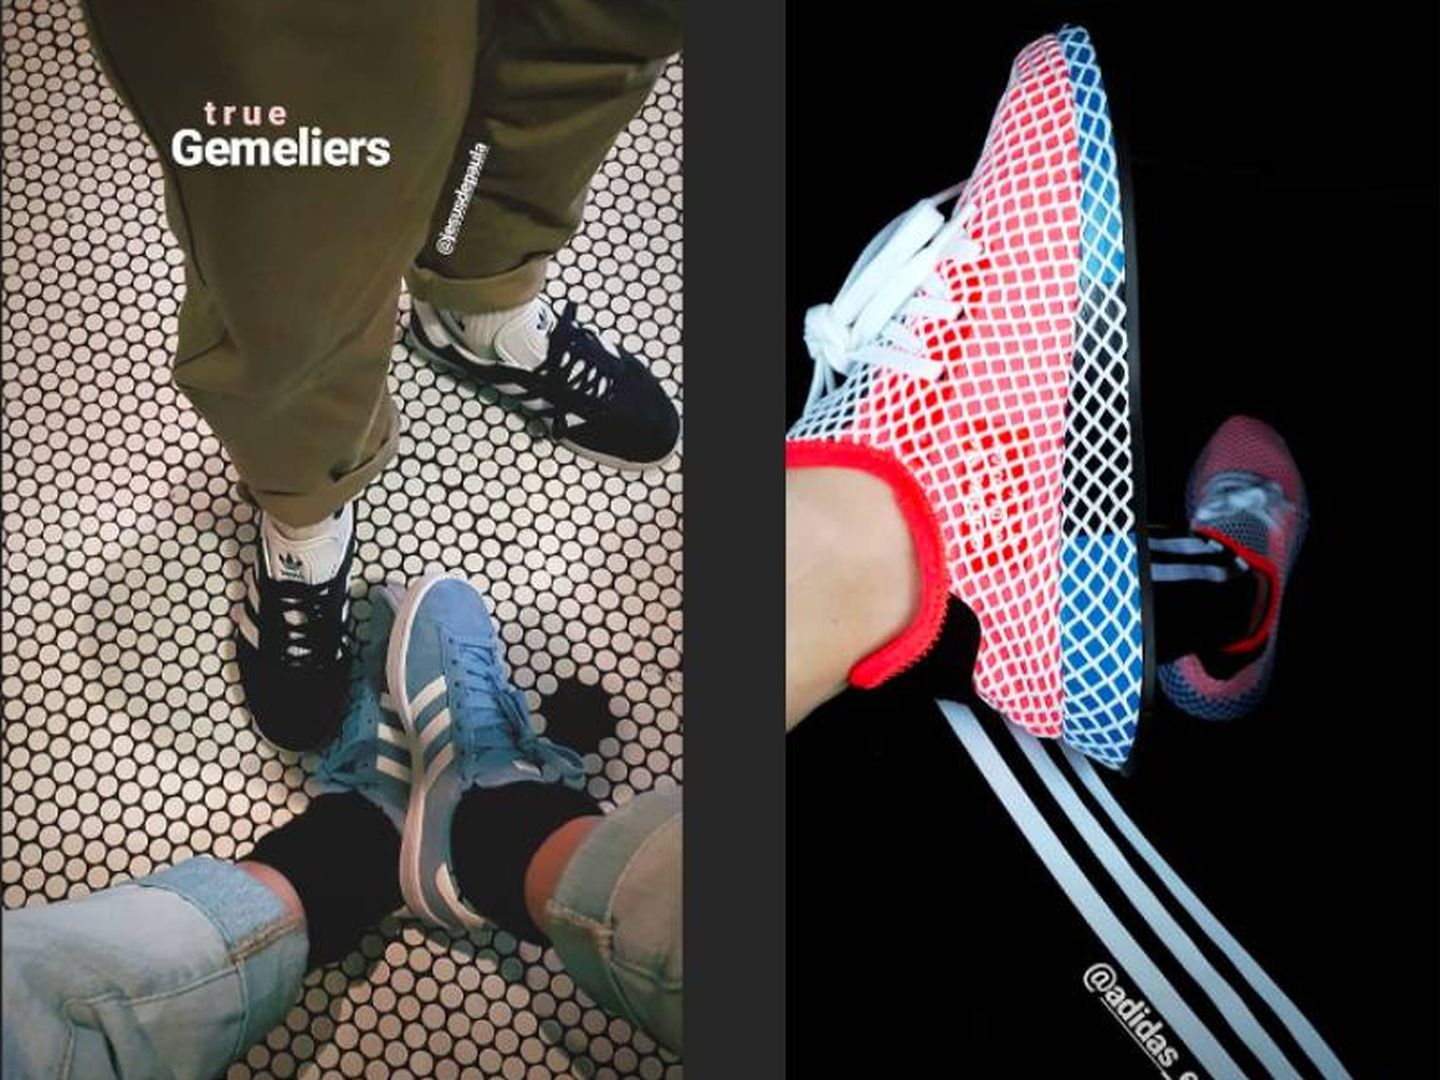 La marca Adidas también figura entre sus esenciales. (Instagram)